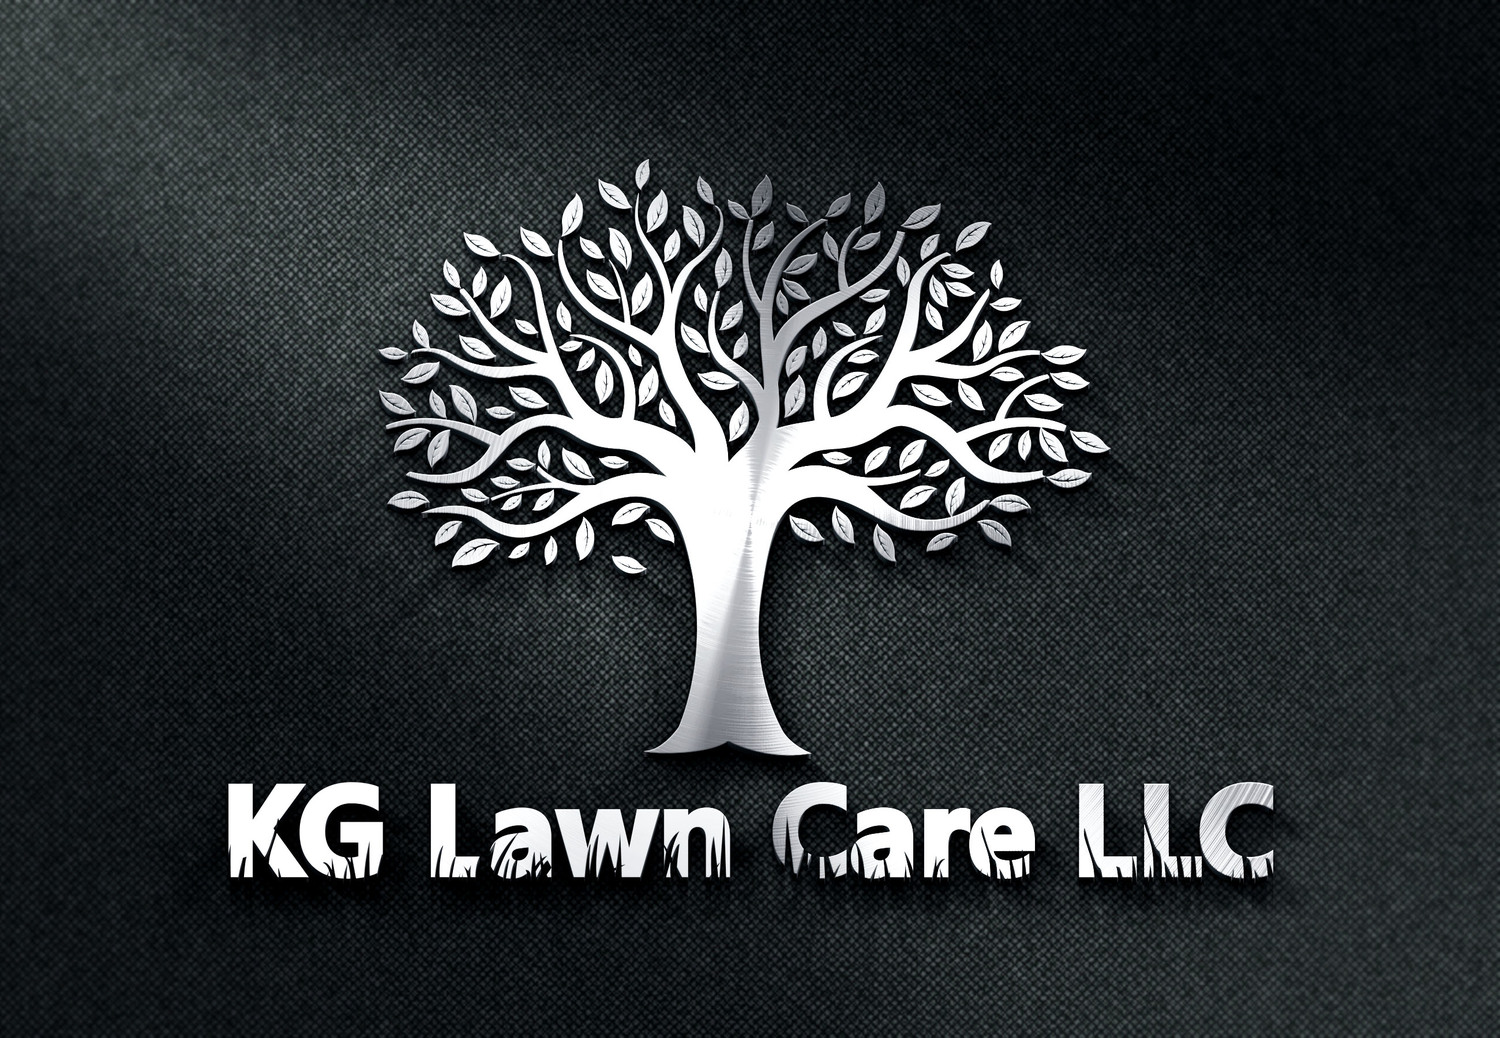 KG LAWN CARE LLC